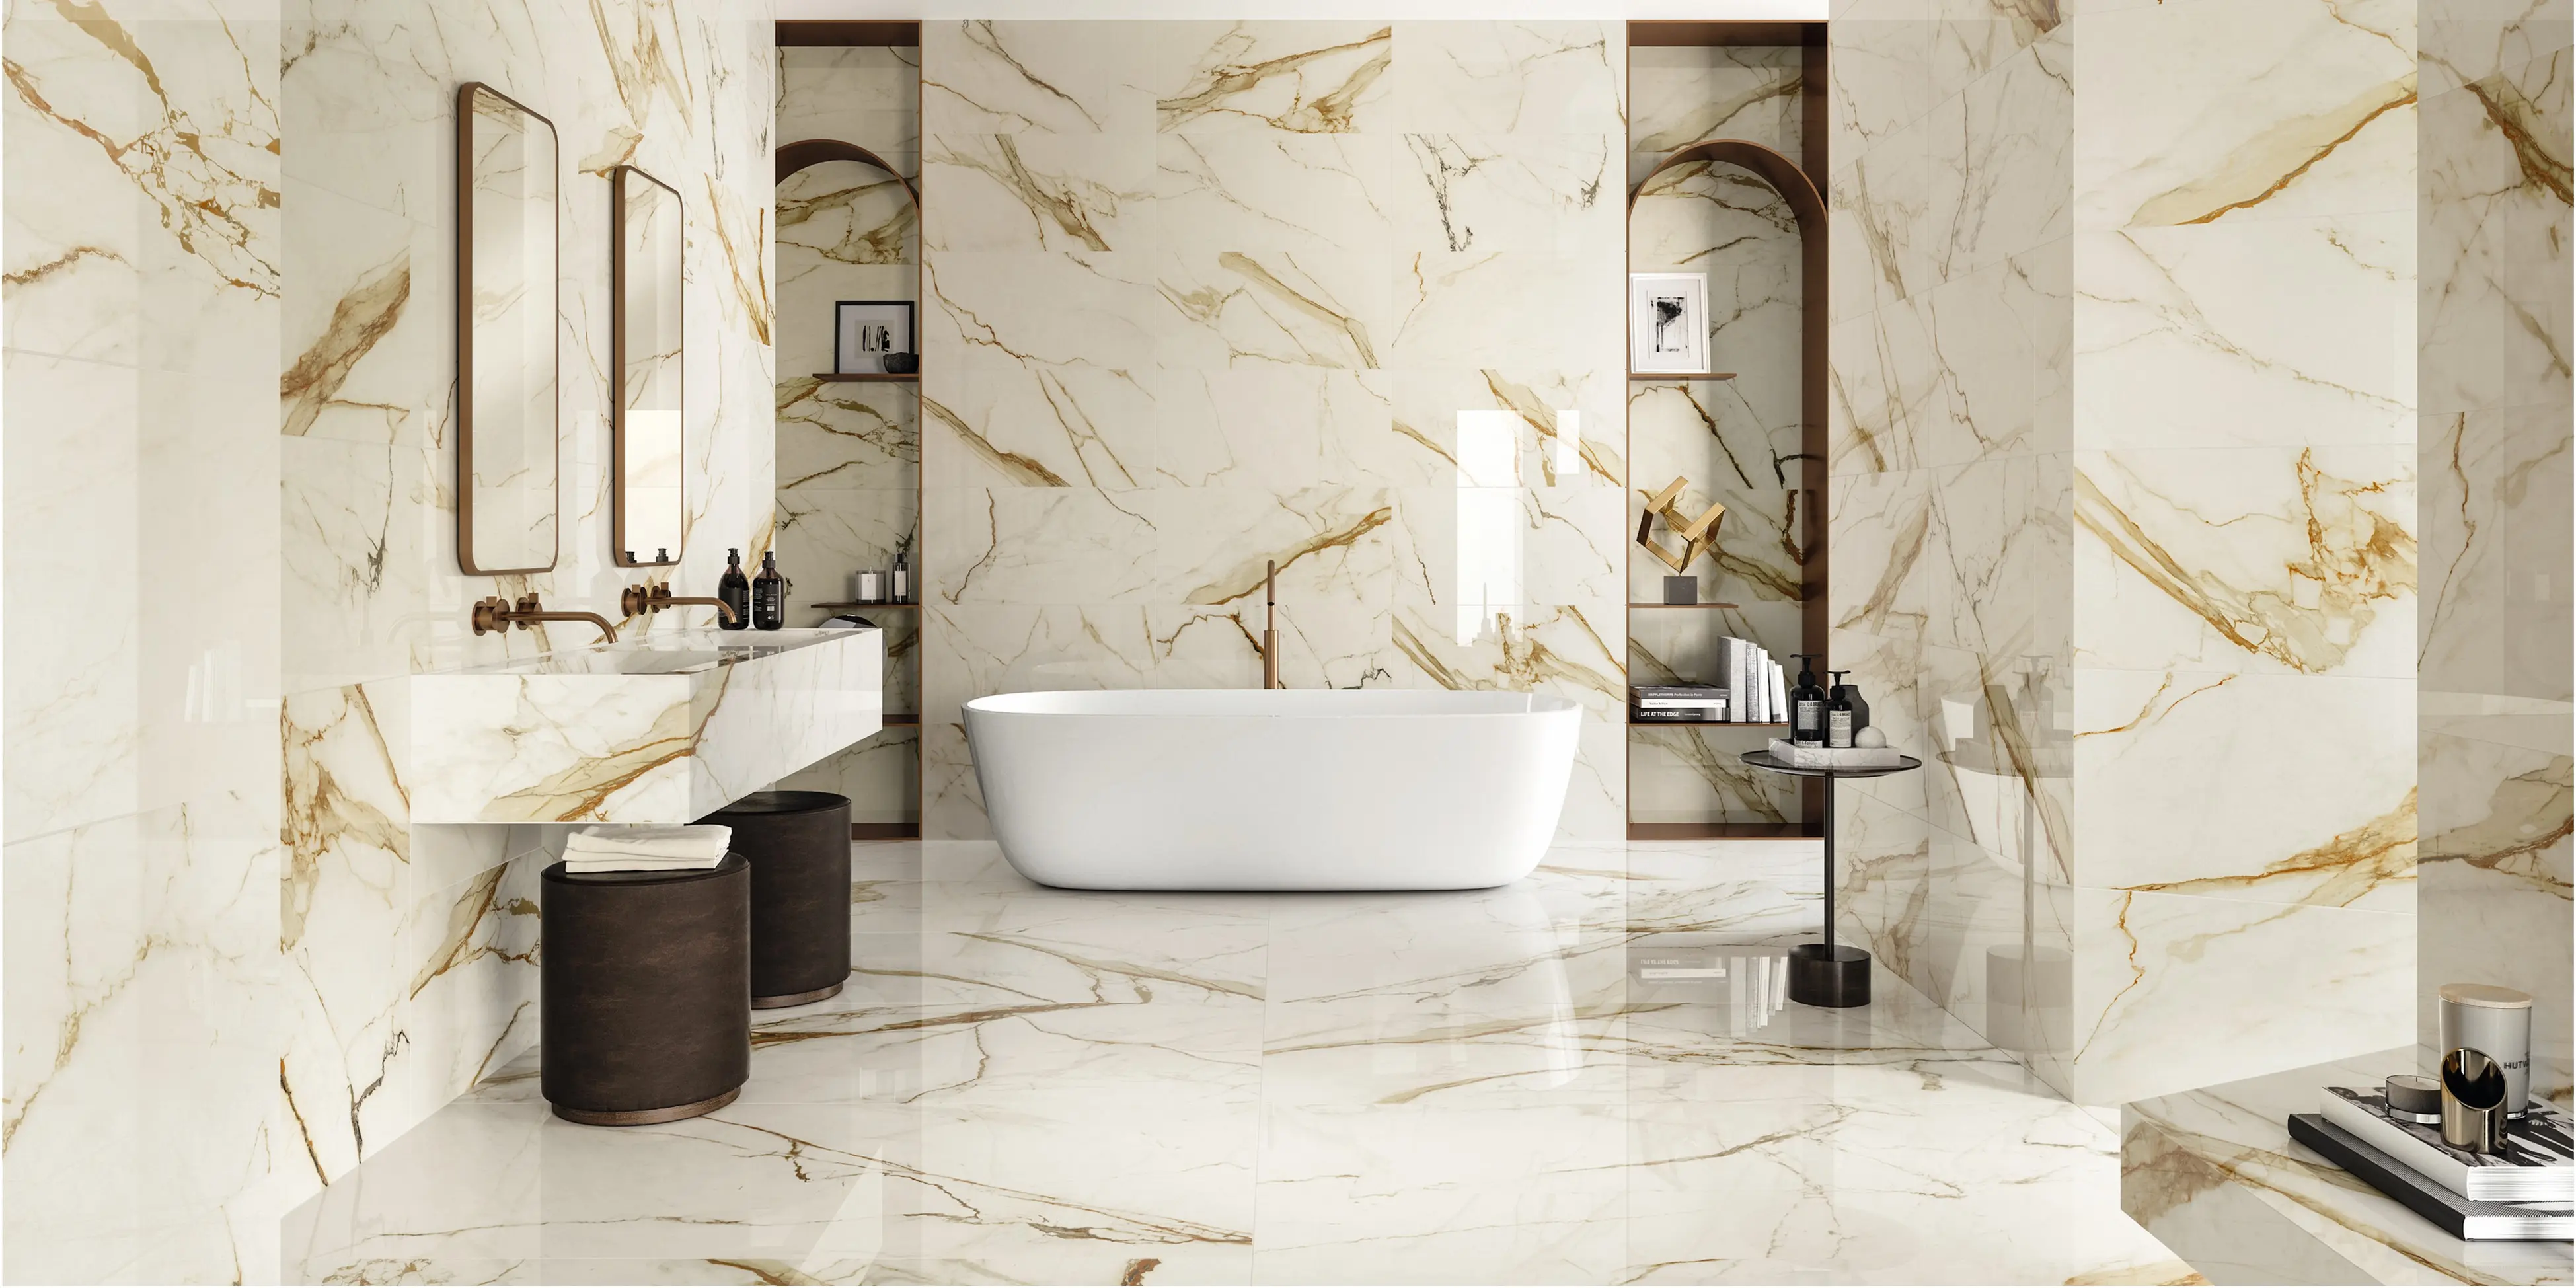 Et liv i luksus med vores guld indlagte marmorfliser. Skab et rum af raffineret elegance med denne subtile kombination af guld og marmor.